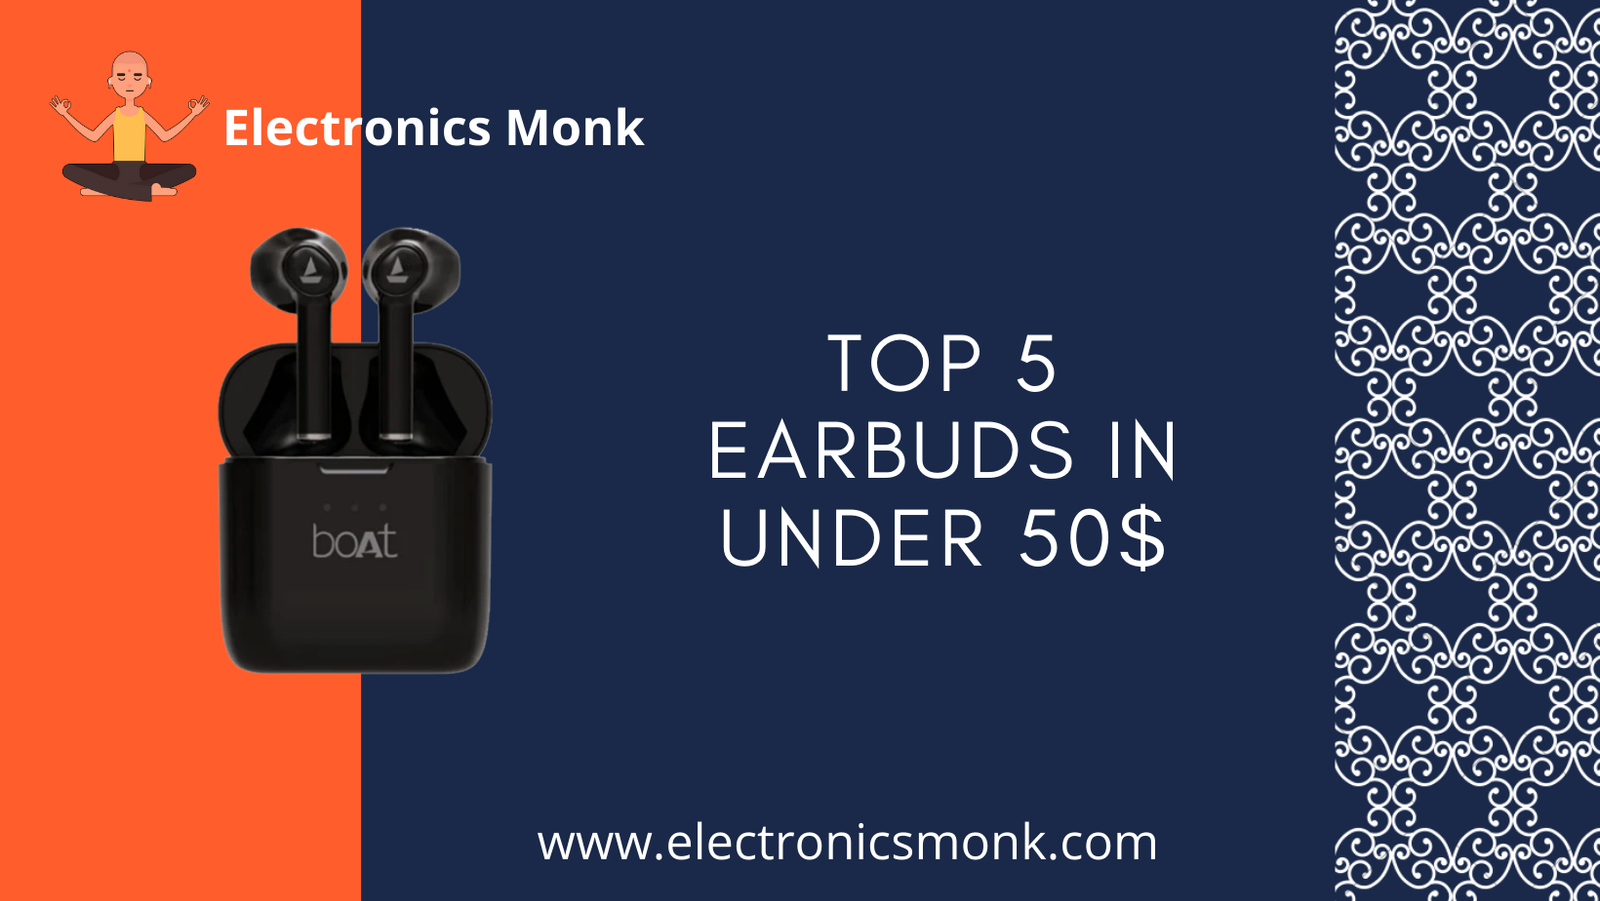 Top 5 earbuds in under 50$